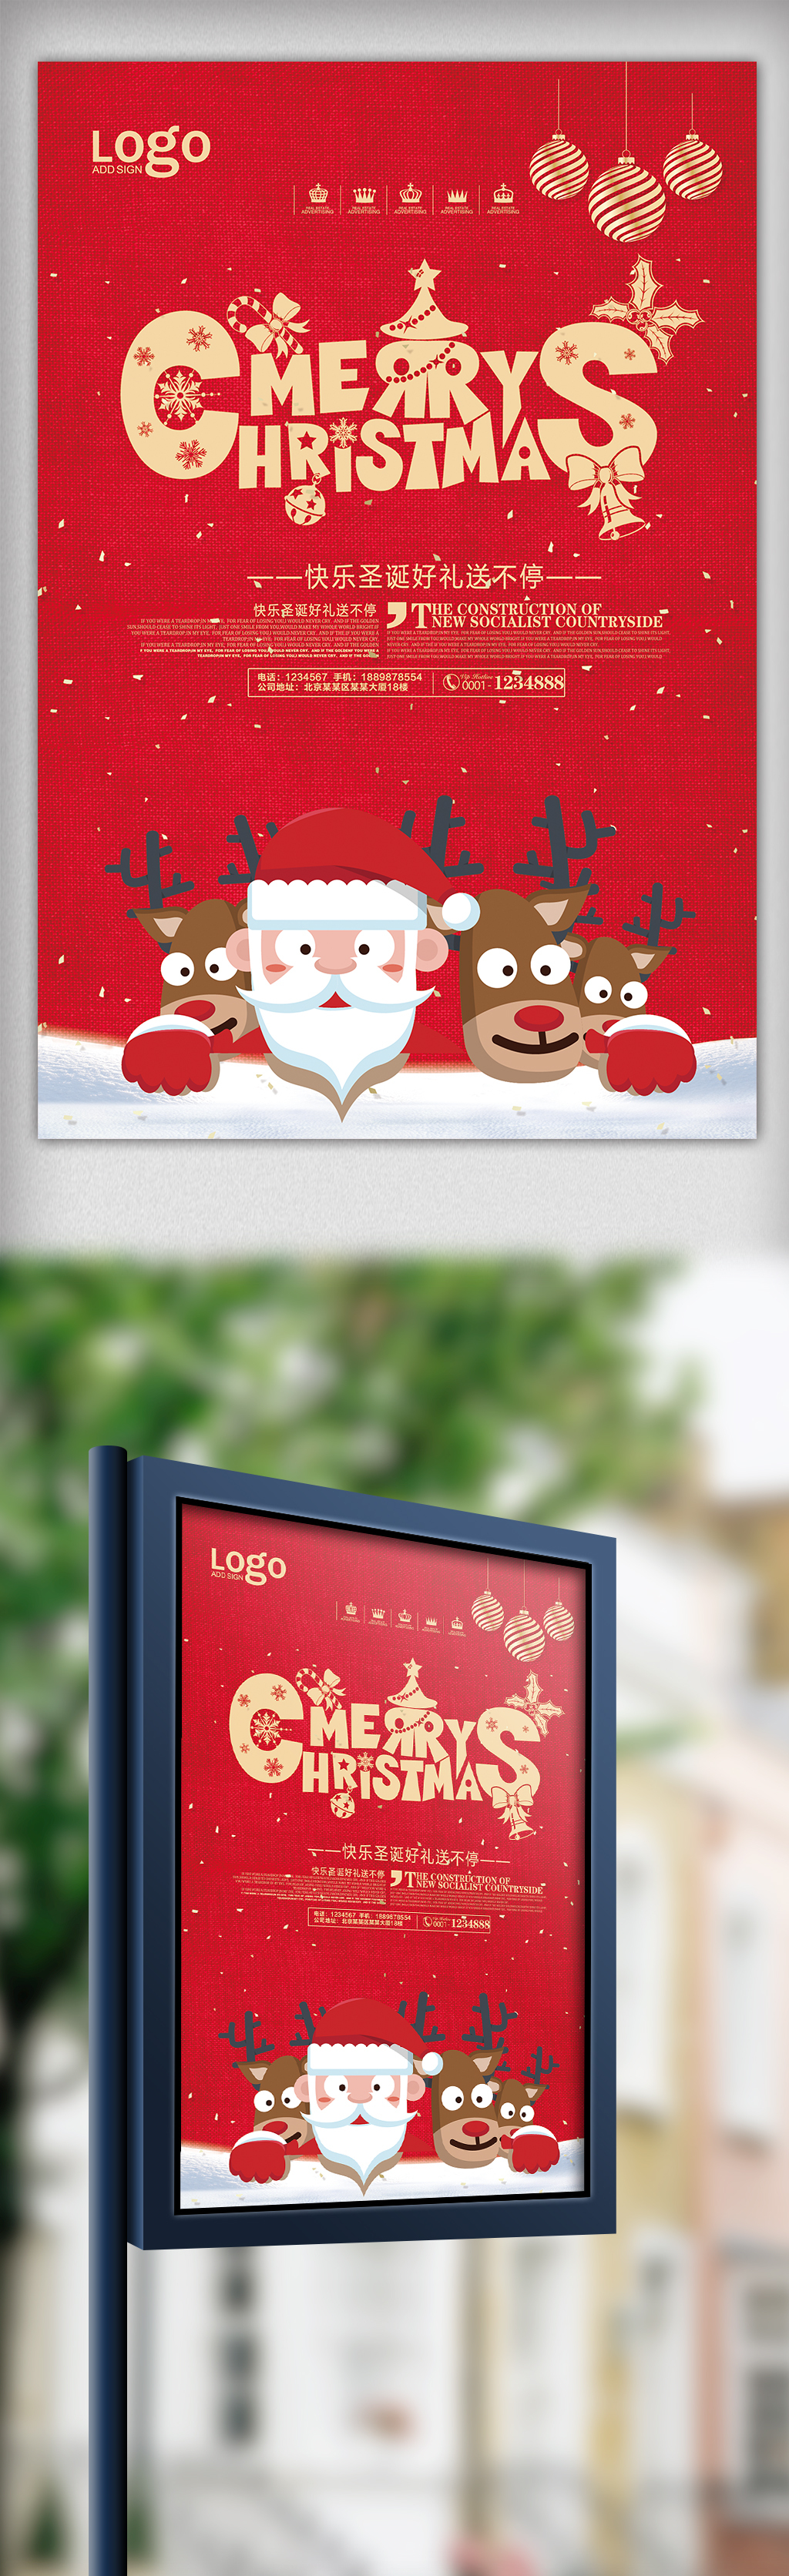 红色喜庆圣诞节宣传海报图片